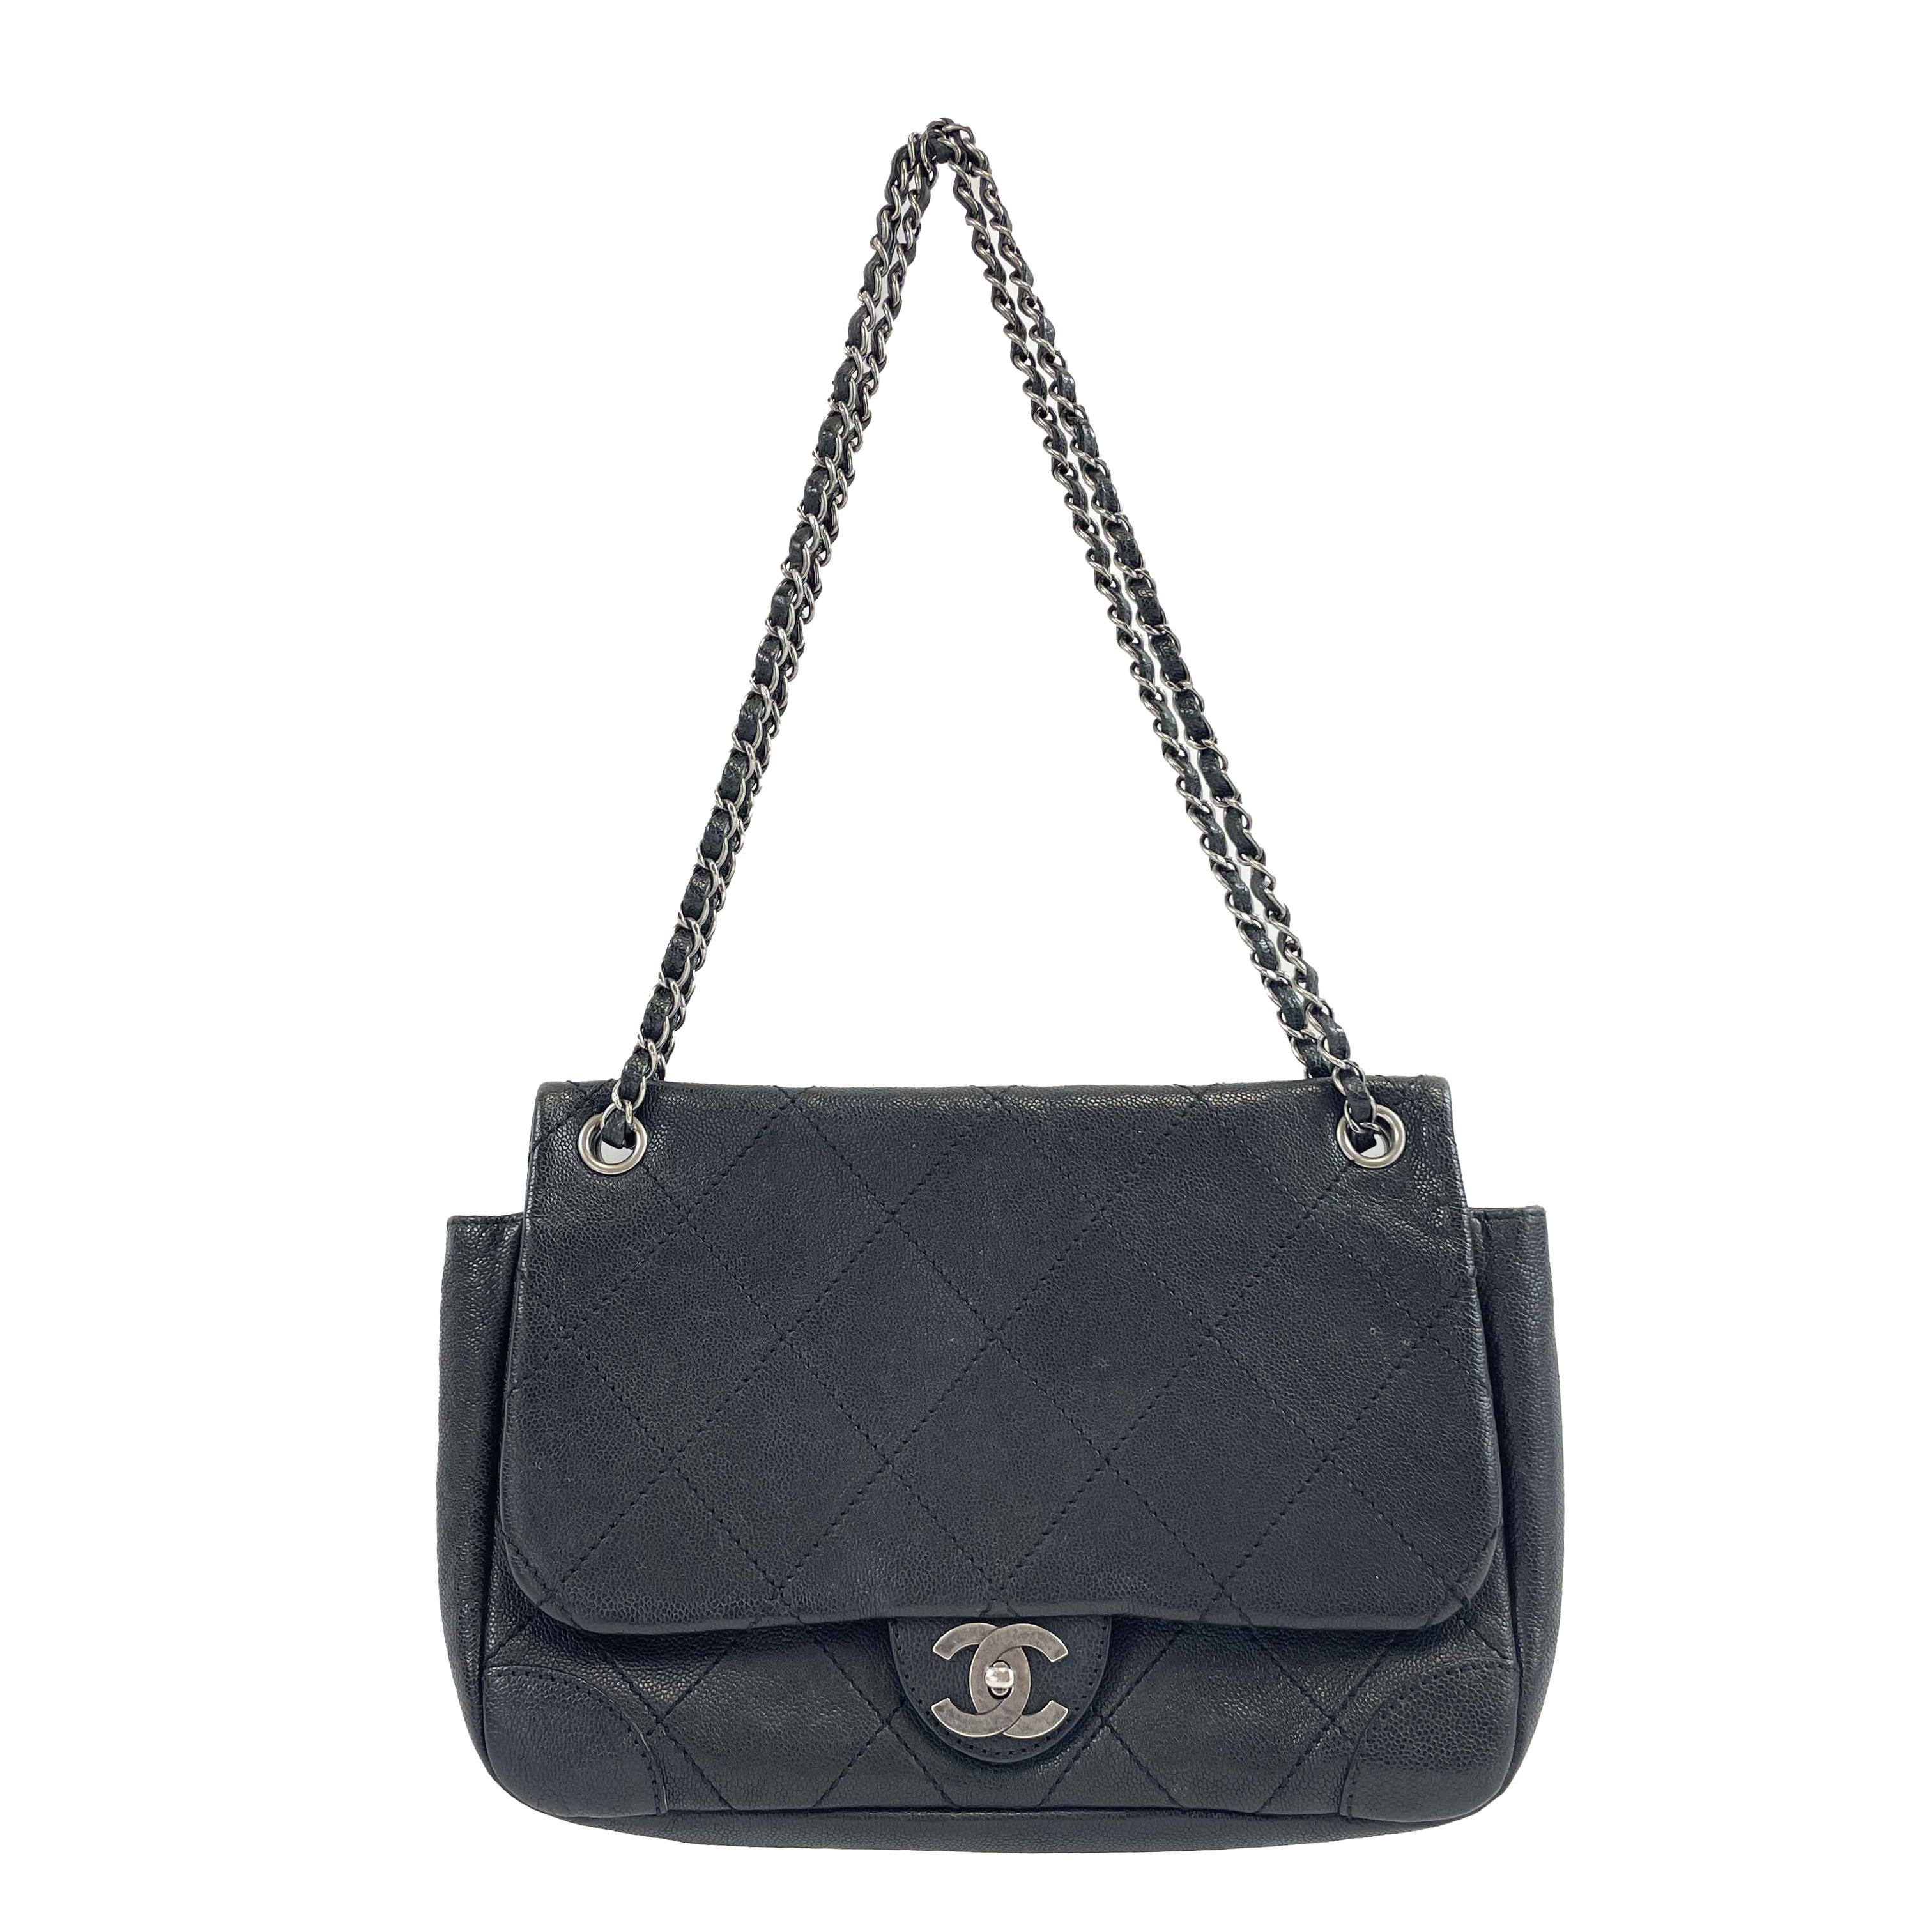 	CHANEL - CC Ligne Flap Large Bag Black / Silver Caviar Leather Shoulder Bag 13